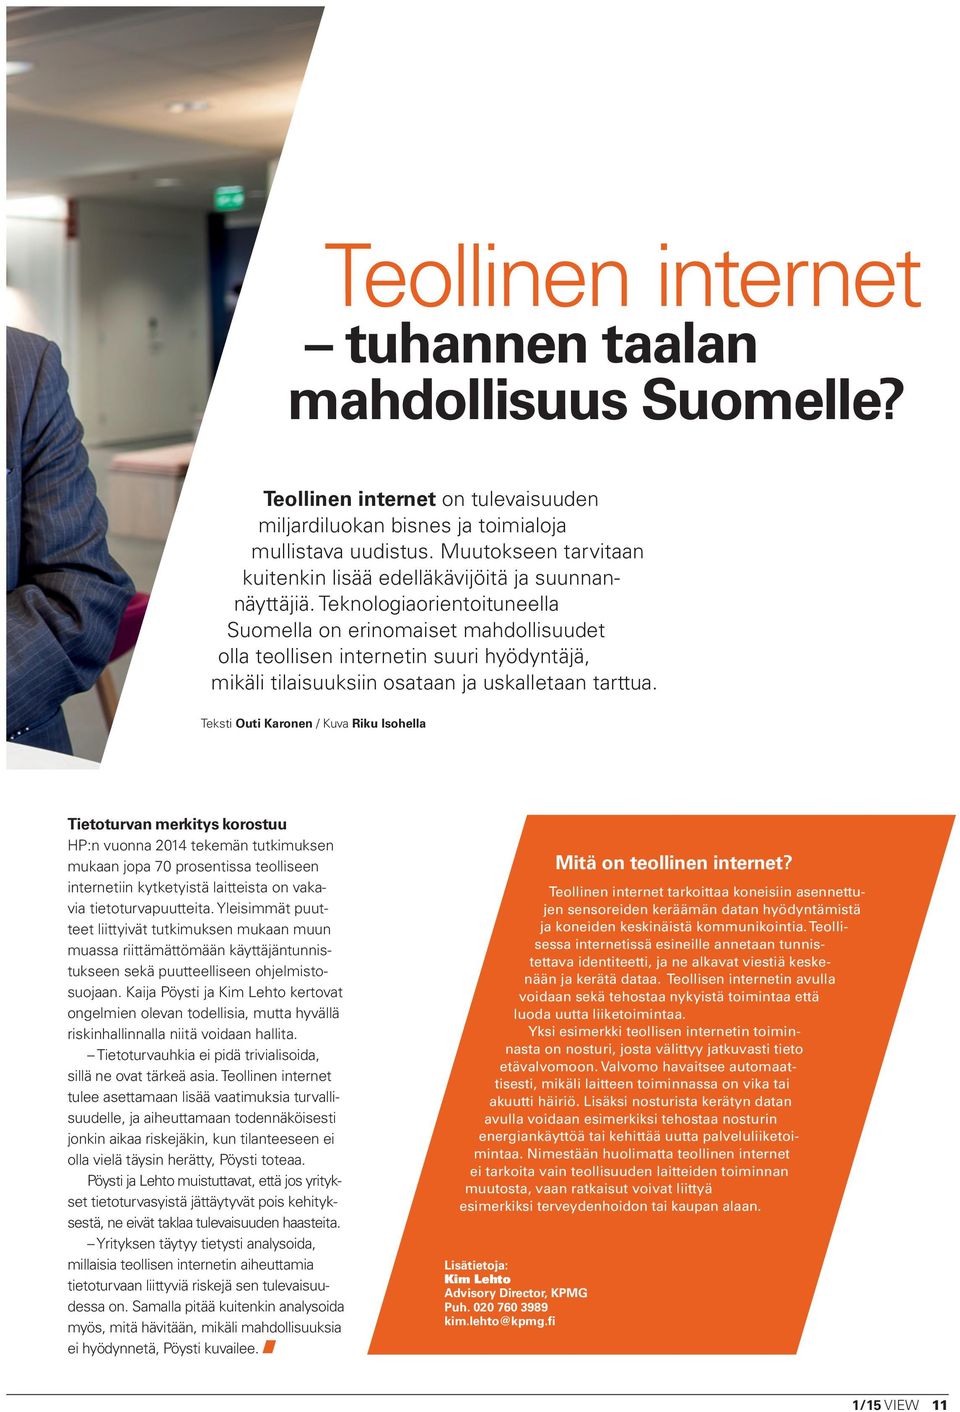 Teknologiaorientoituneella Suomella on erinomaiset mahdollisuudet olla teollisen internetin suuri hyödyntäjä, mikäli tilaisuuksiin osataan ja uskalletaan tarttua.